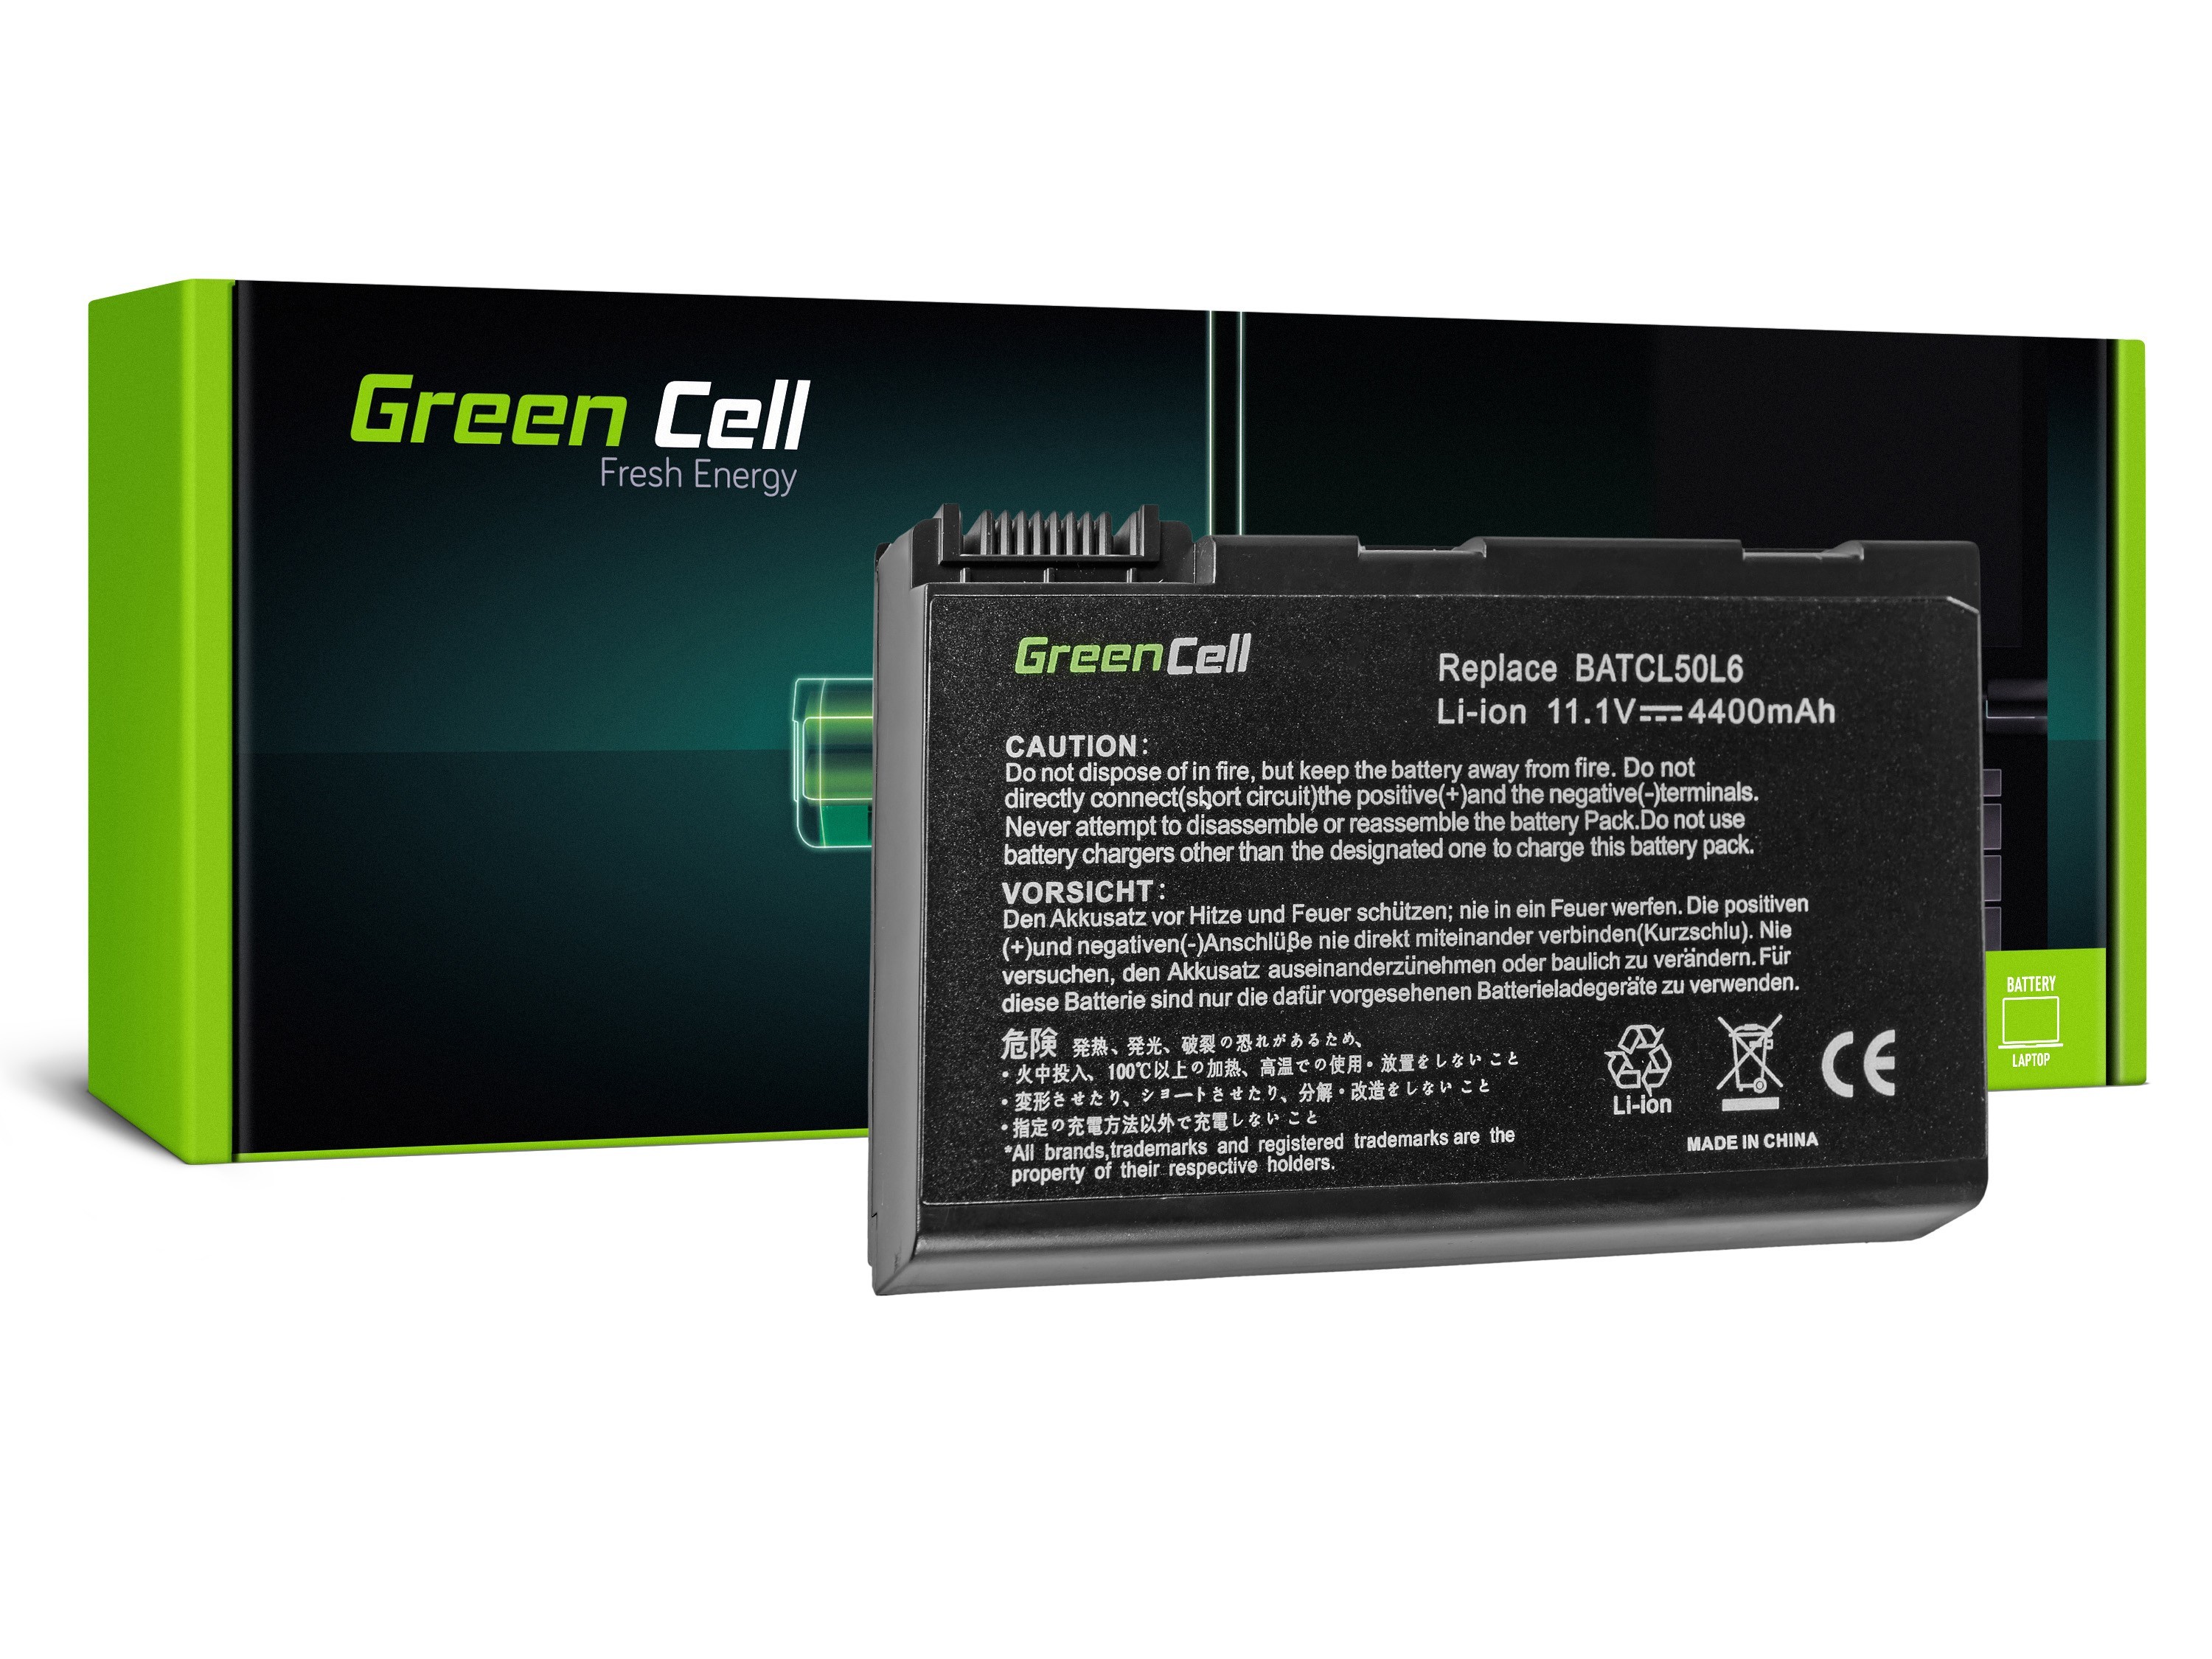 Green Cell laptopbatteri til Acer Aspire 3100 3690 5110 5630